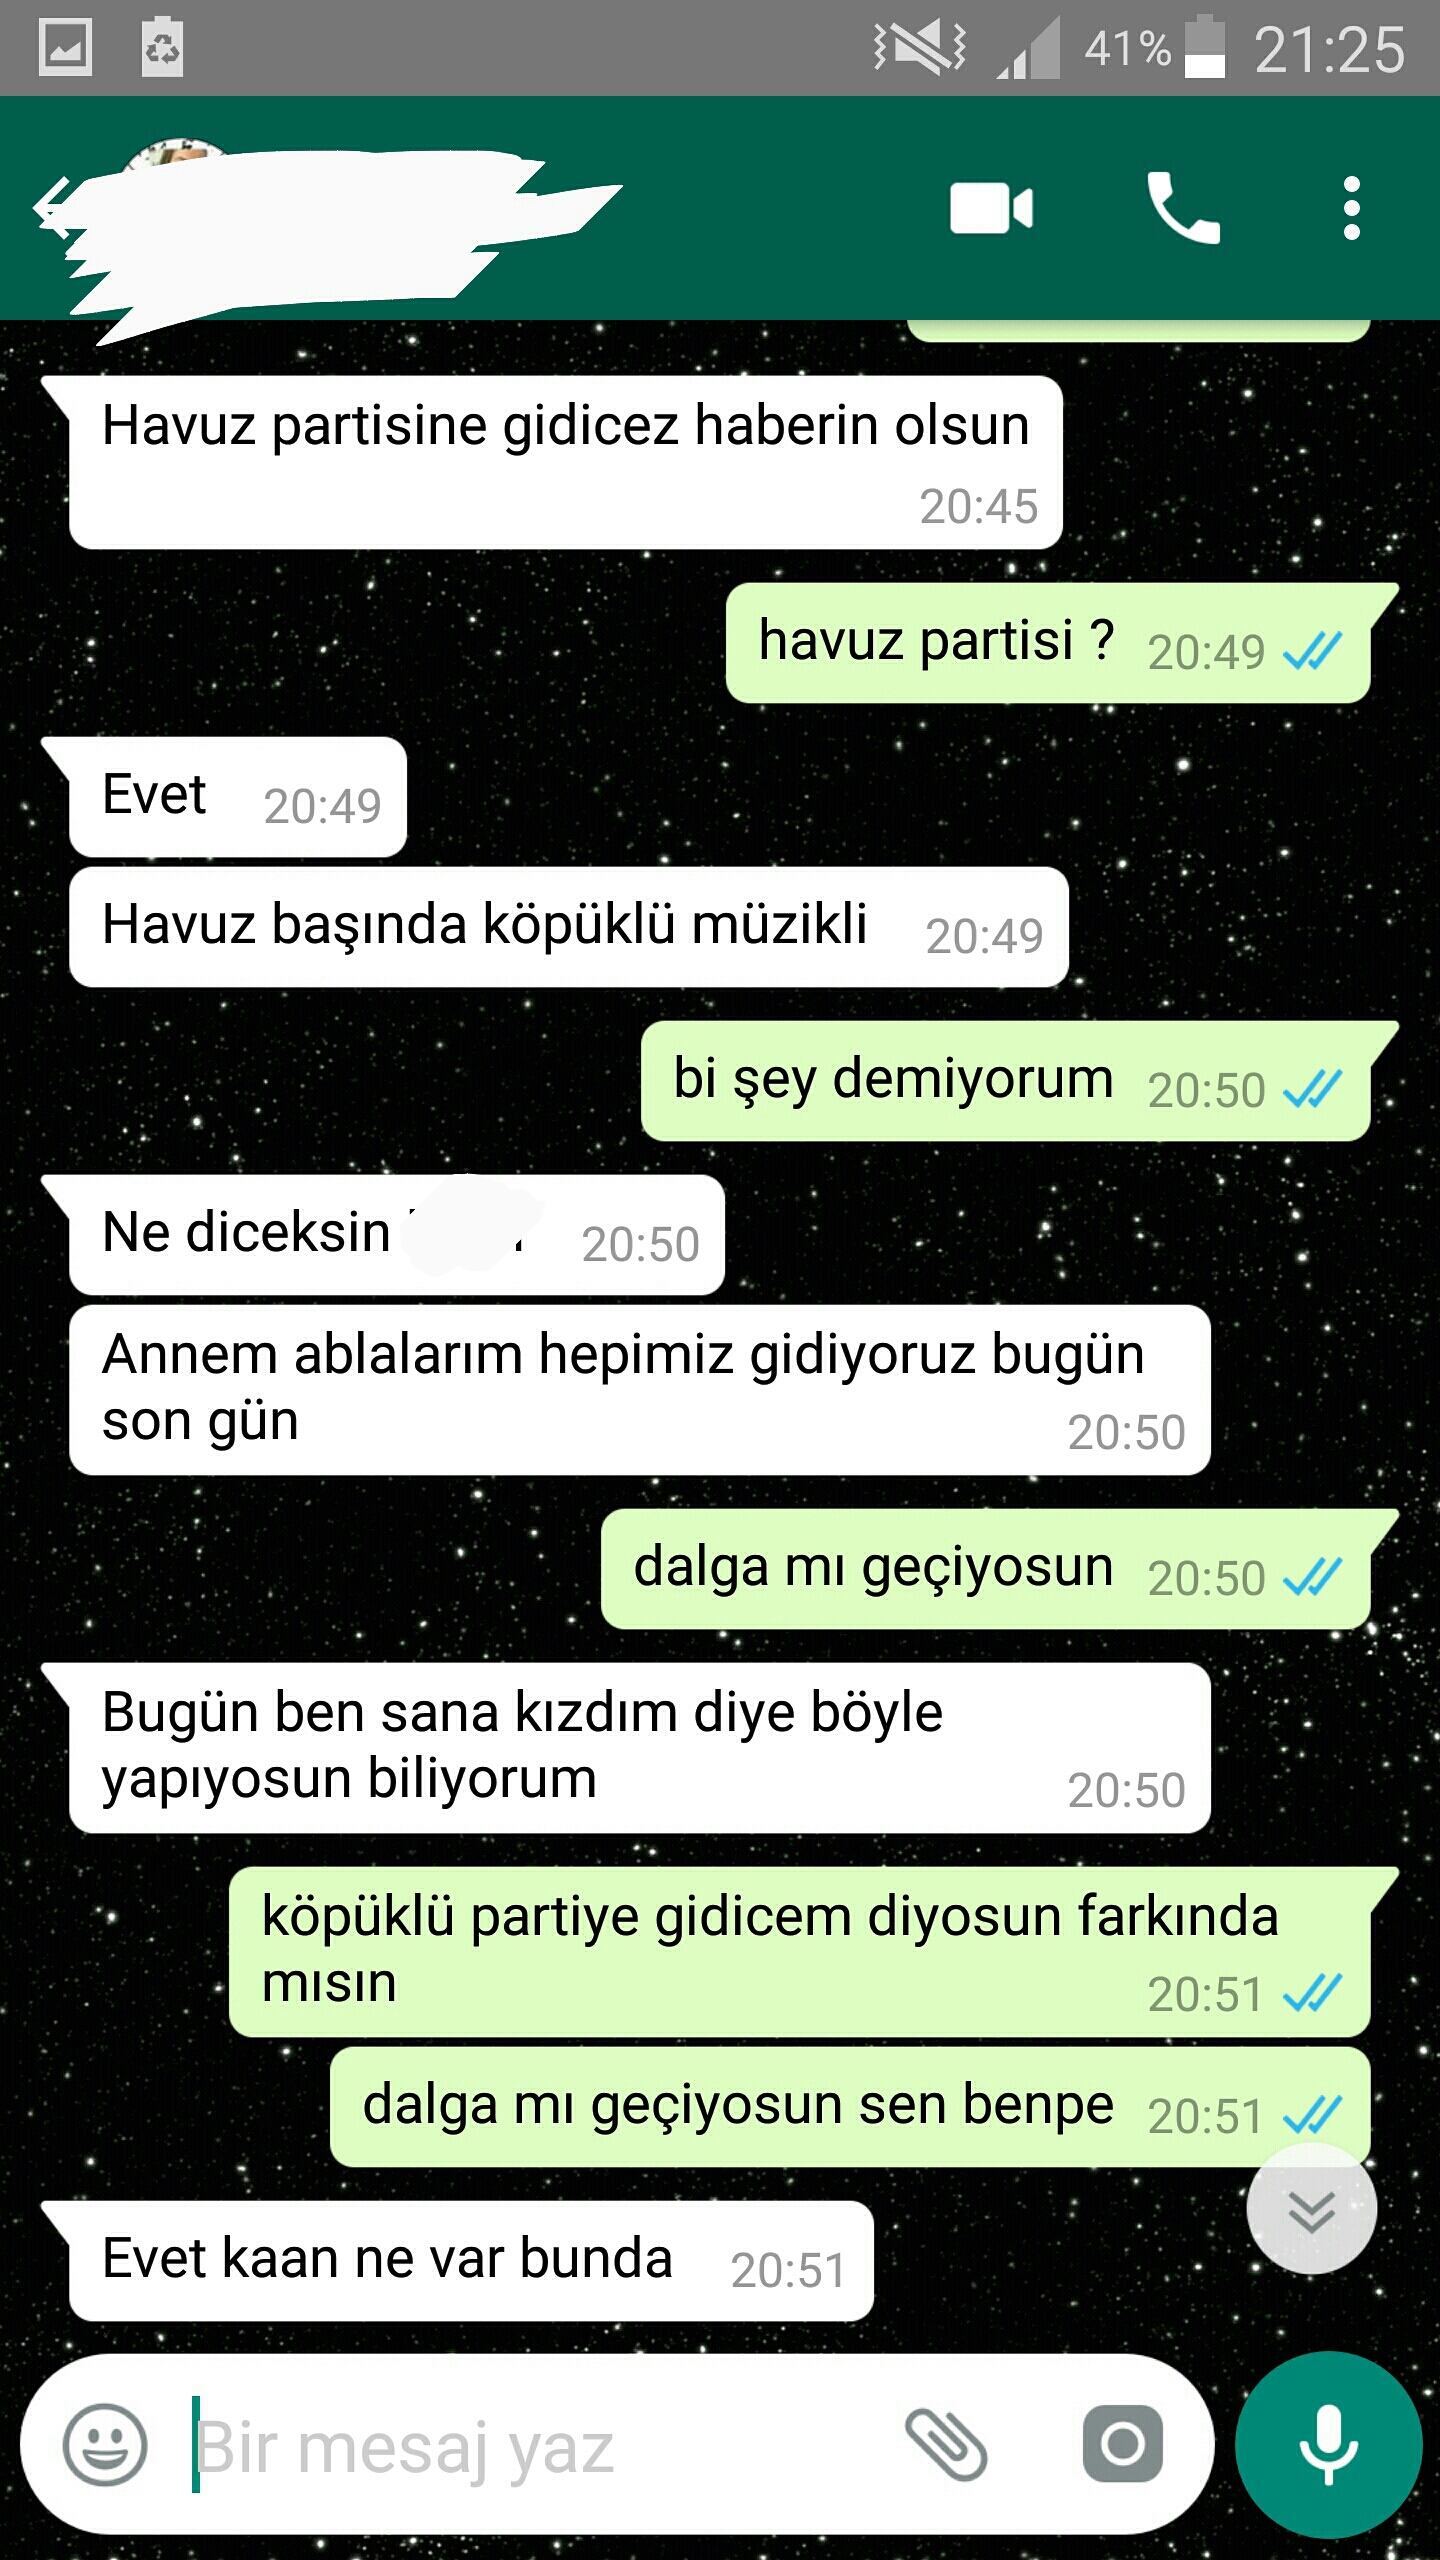 Video Turkish Cuckold